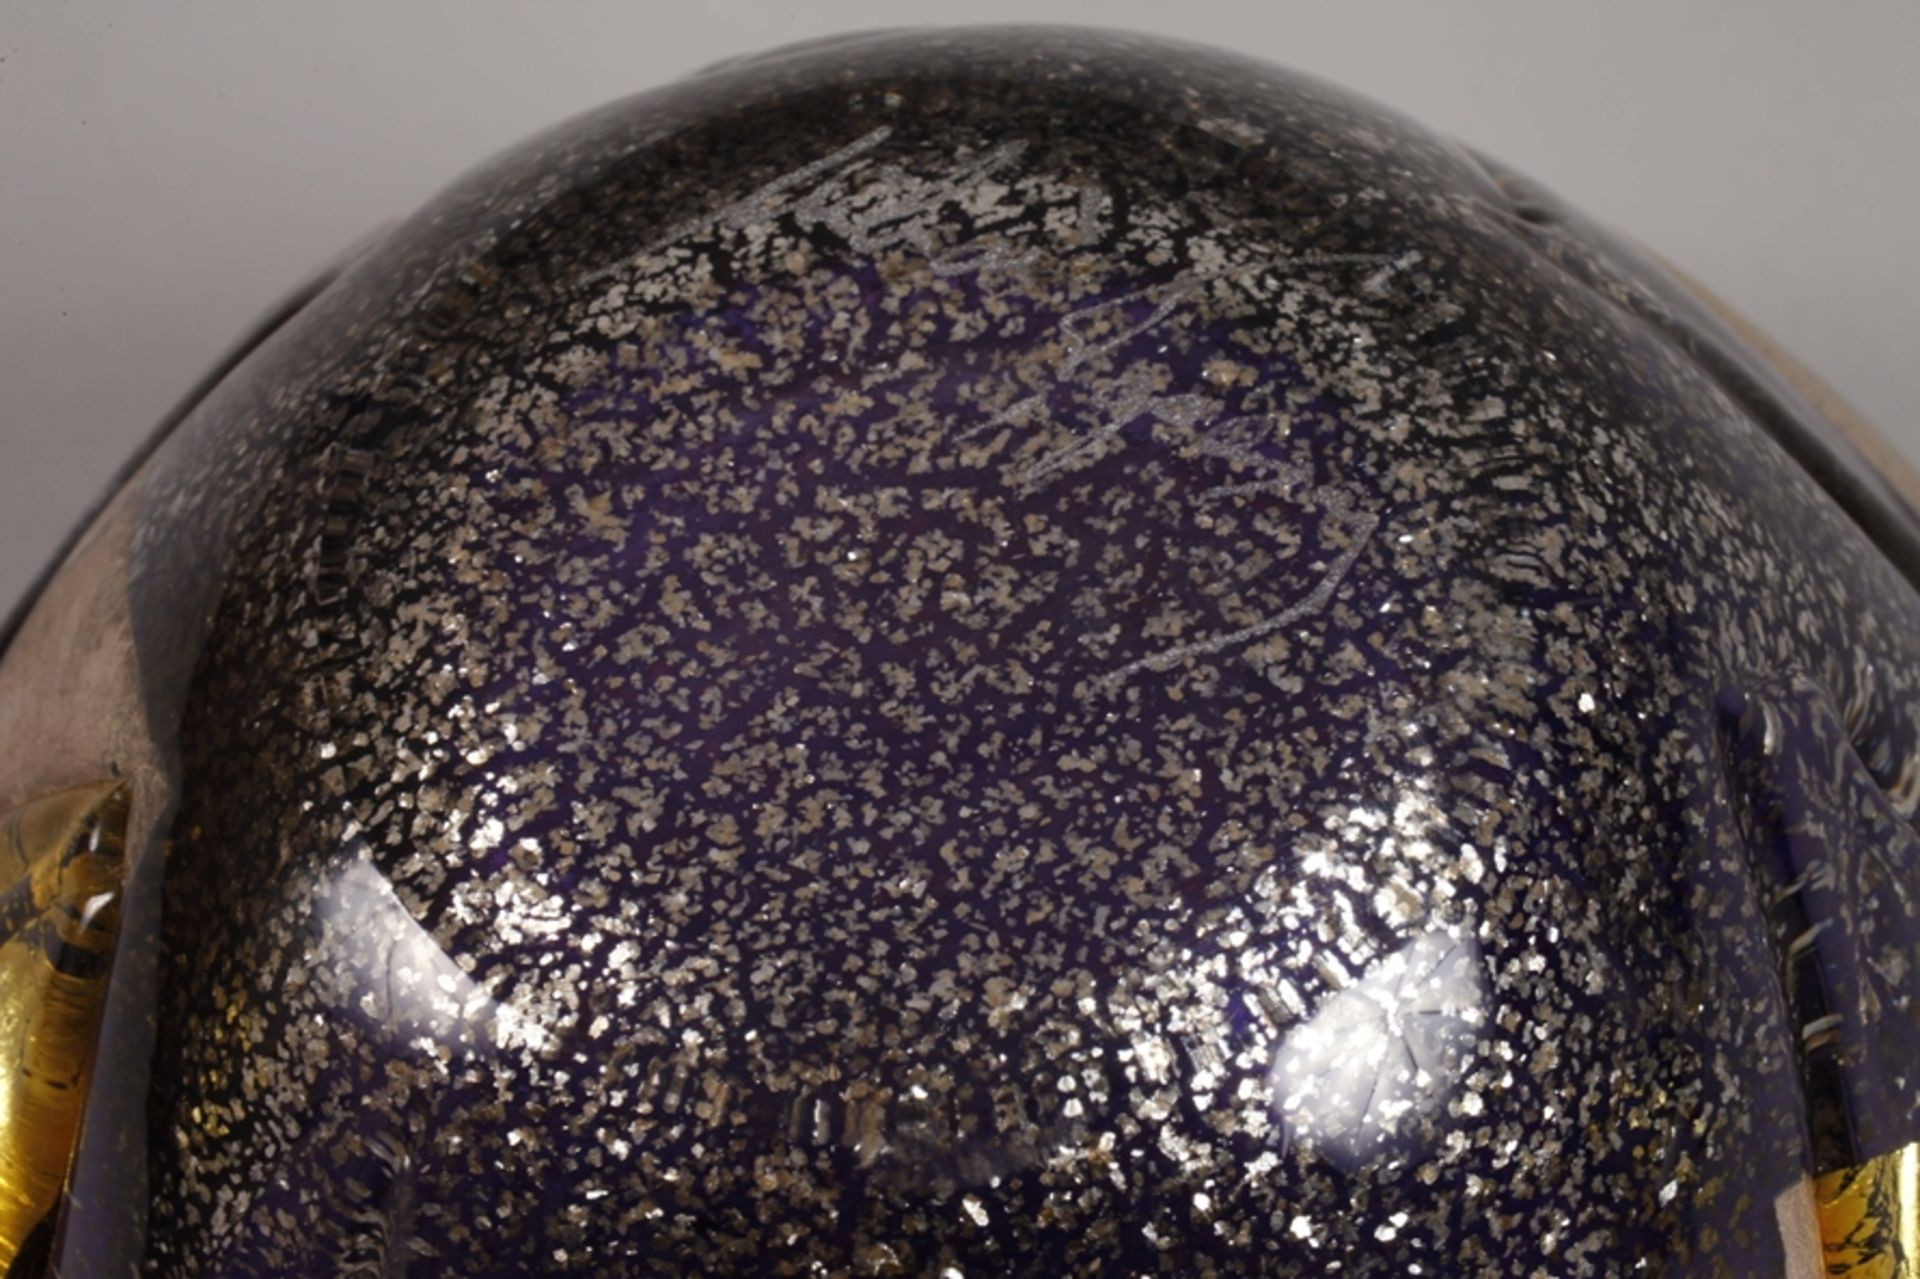 Mihai Topescu bowl studio glass - Image 5 of 5